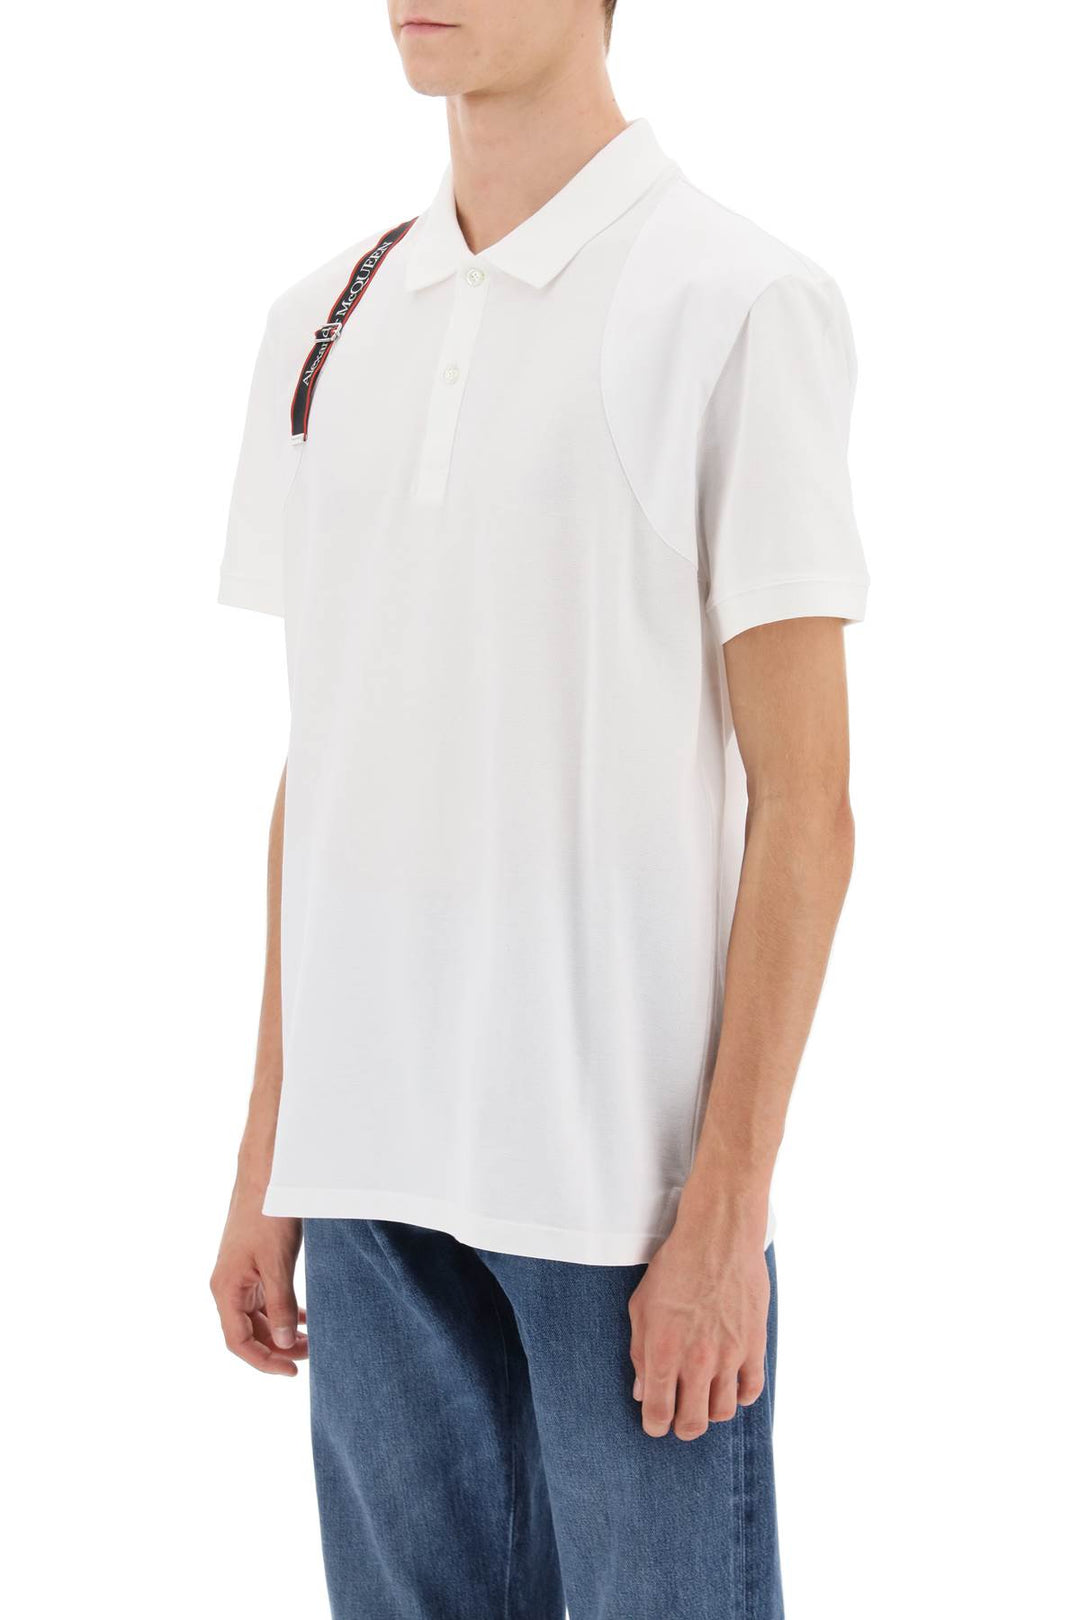 Alexander mcqueen harness polo shirt with selvedge logo-3